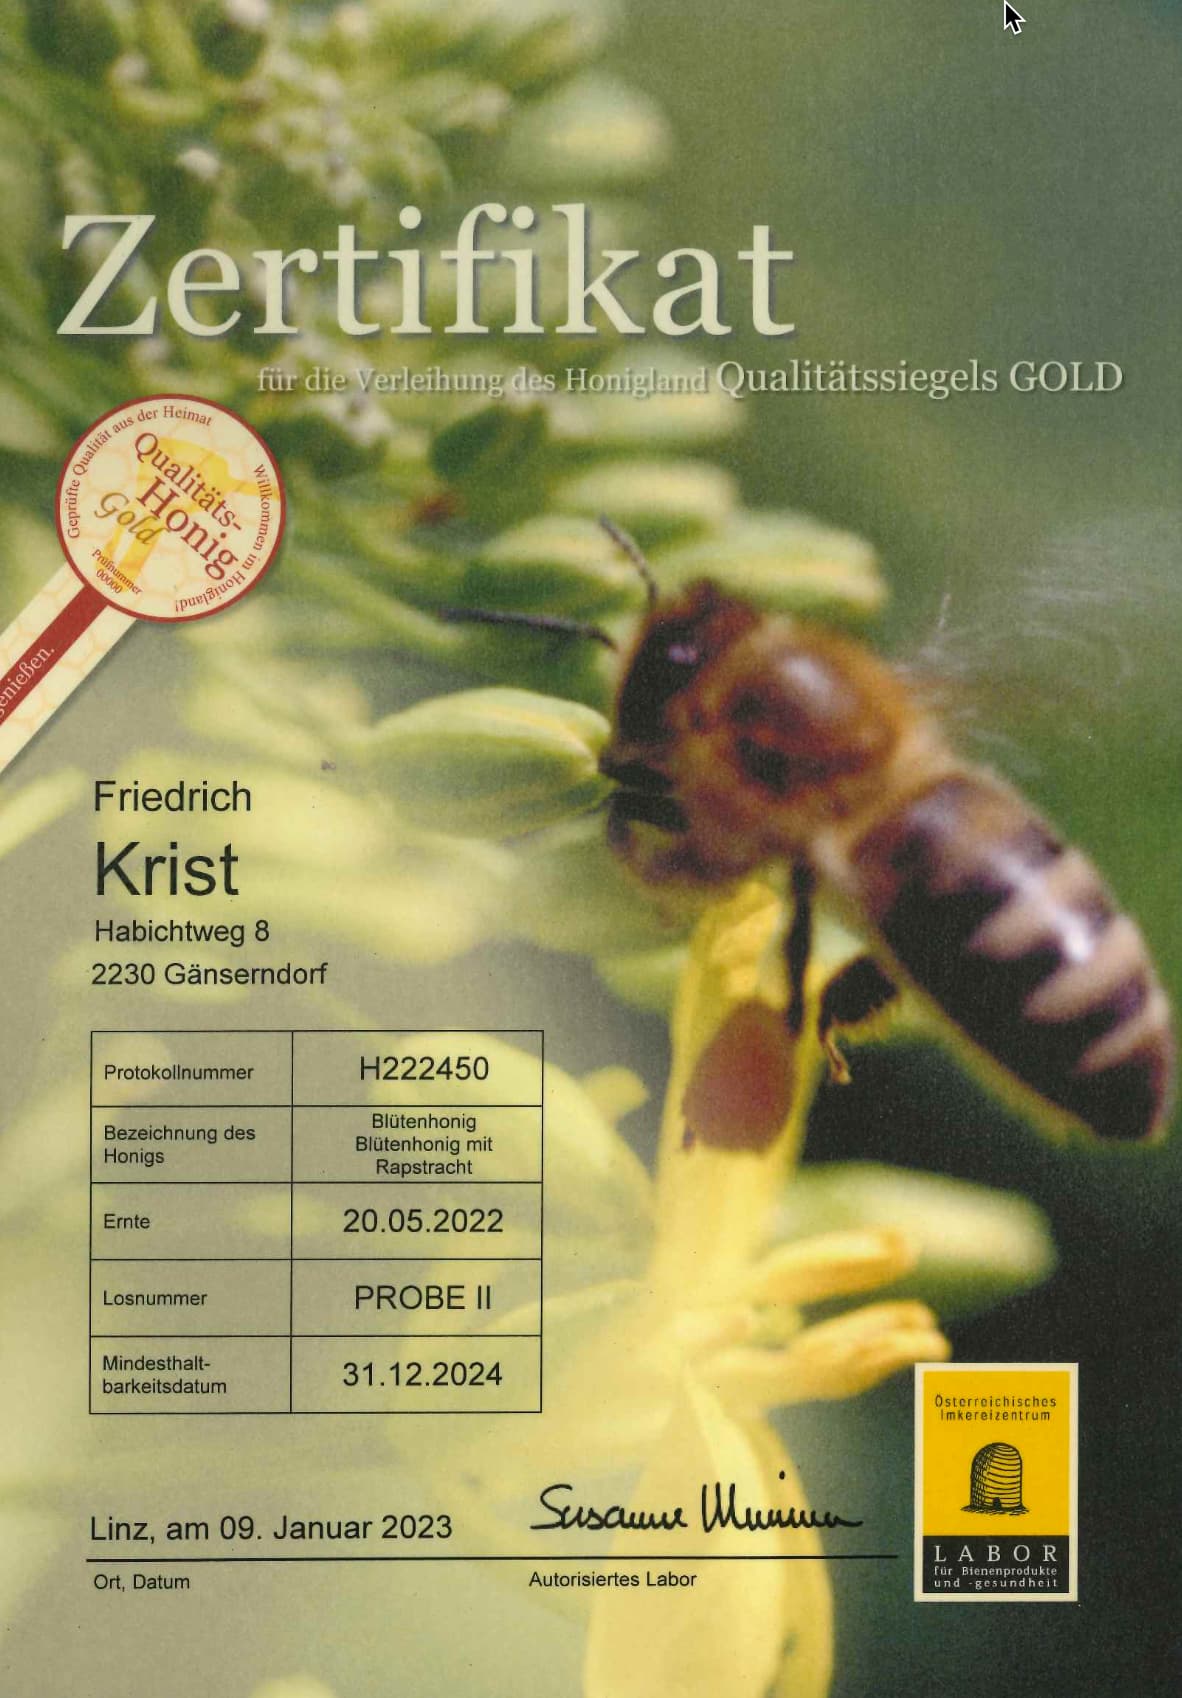 Zertifikat Qualitäts-Honig Gold Blütenhonig mit Rapstracht